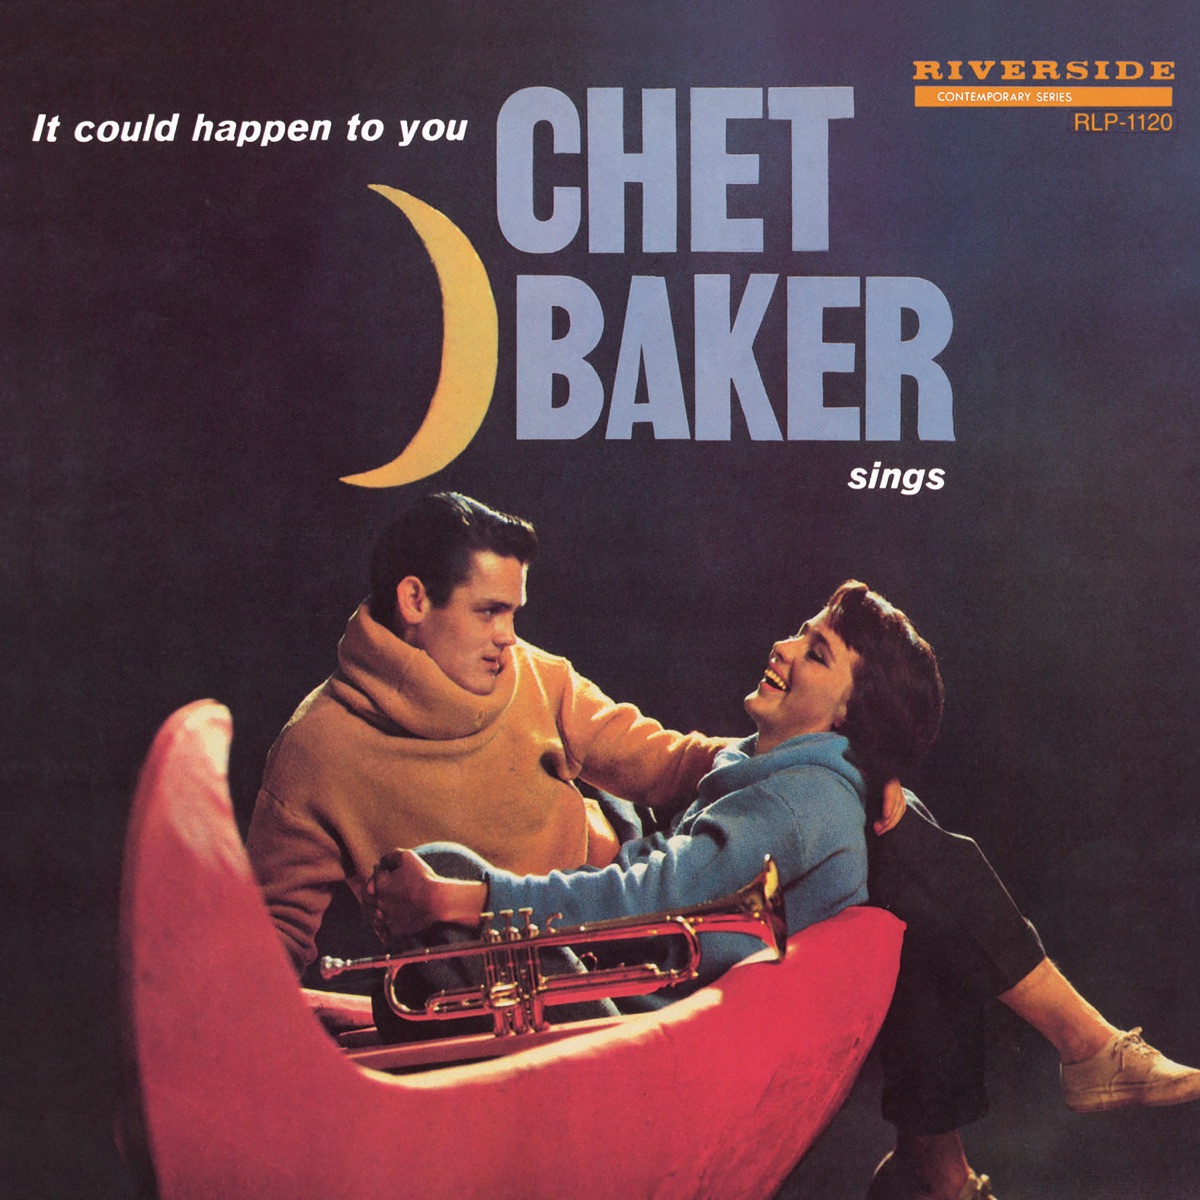 Stan Meets Chet - Album by Chet Baker & Stan Getz - Apple Music